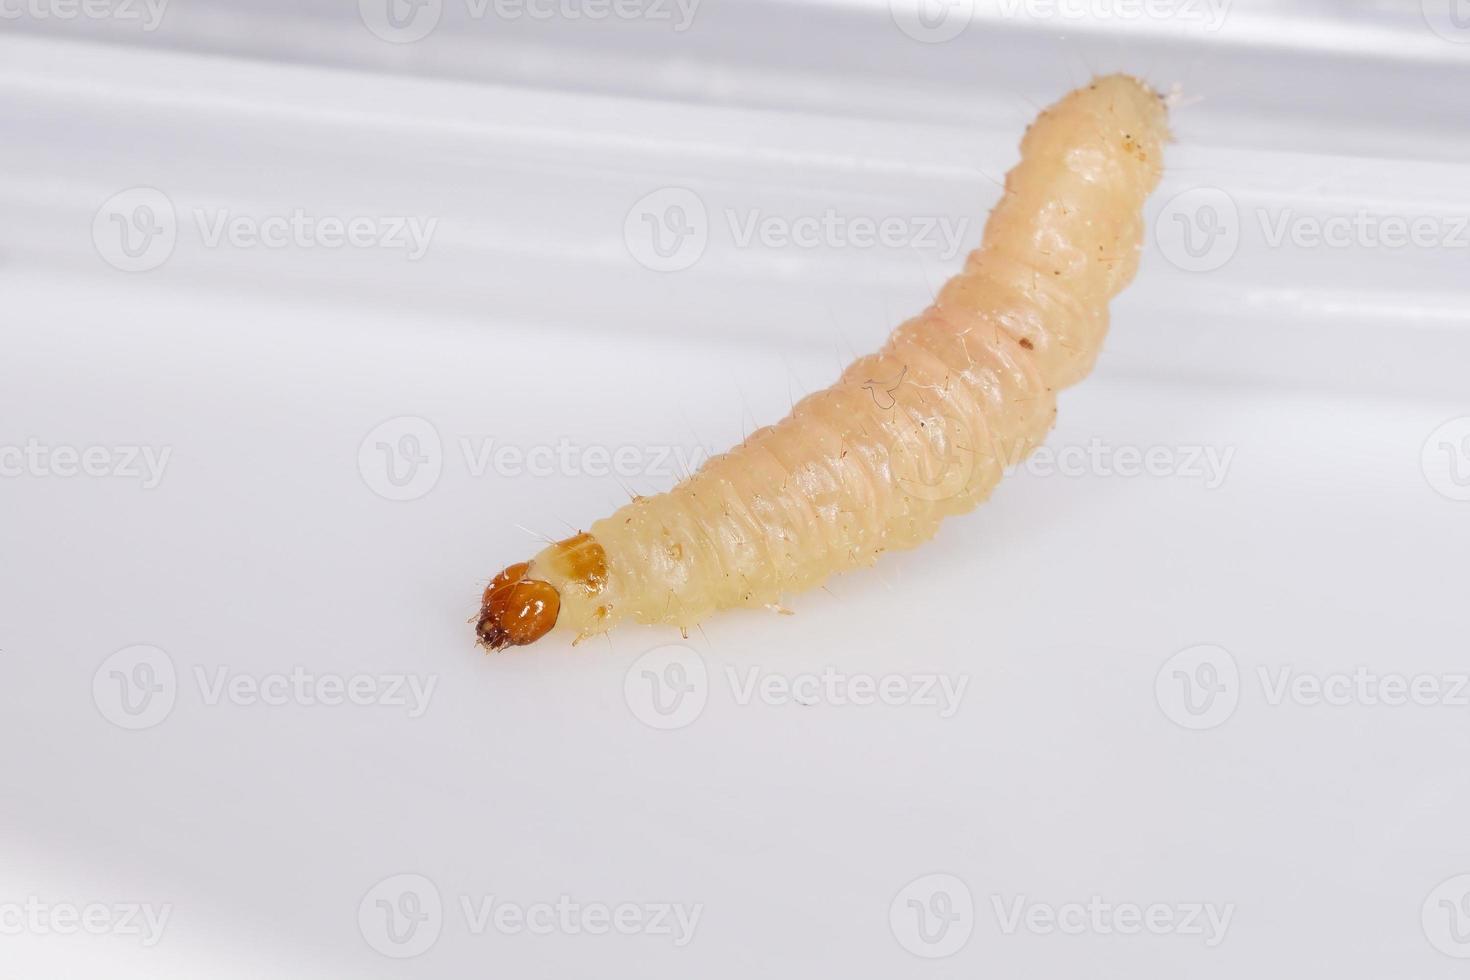 larva de mariposa pequeña foto